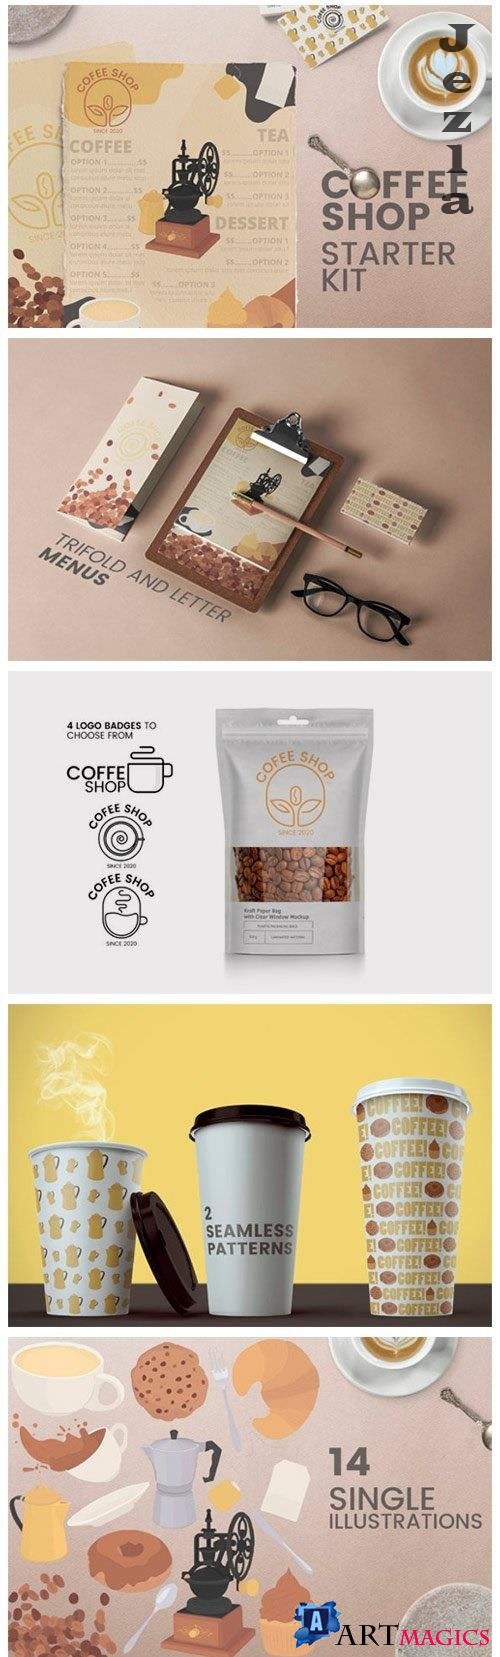 Coffee shop kit - Menus logos MORE! - 4983078